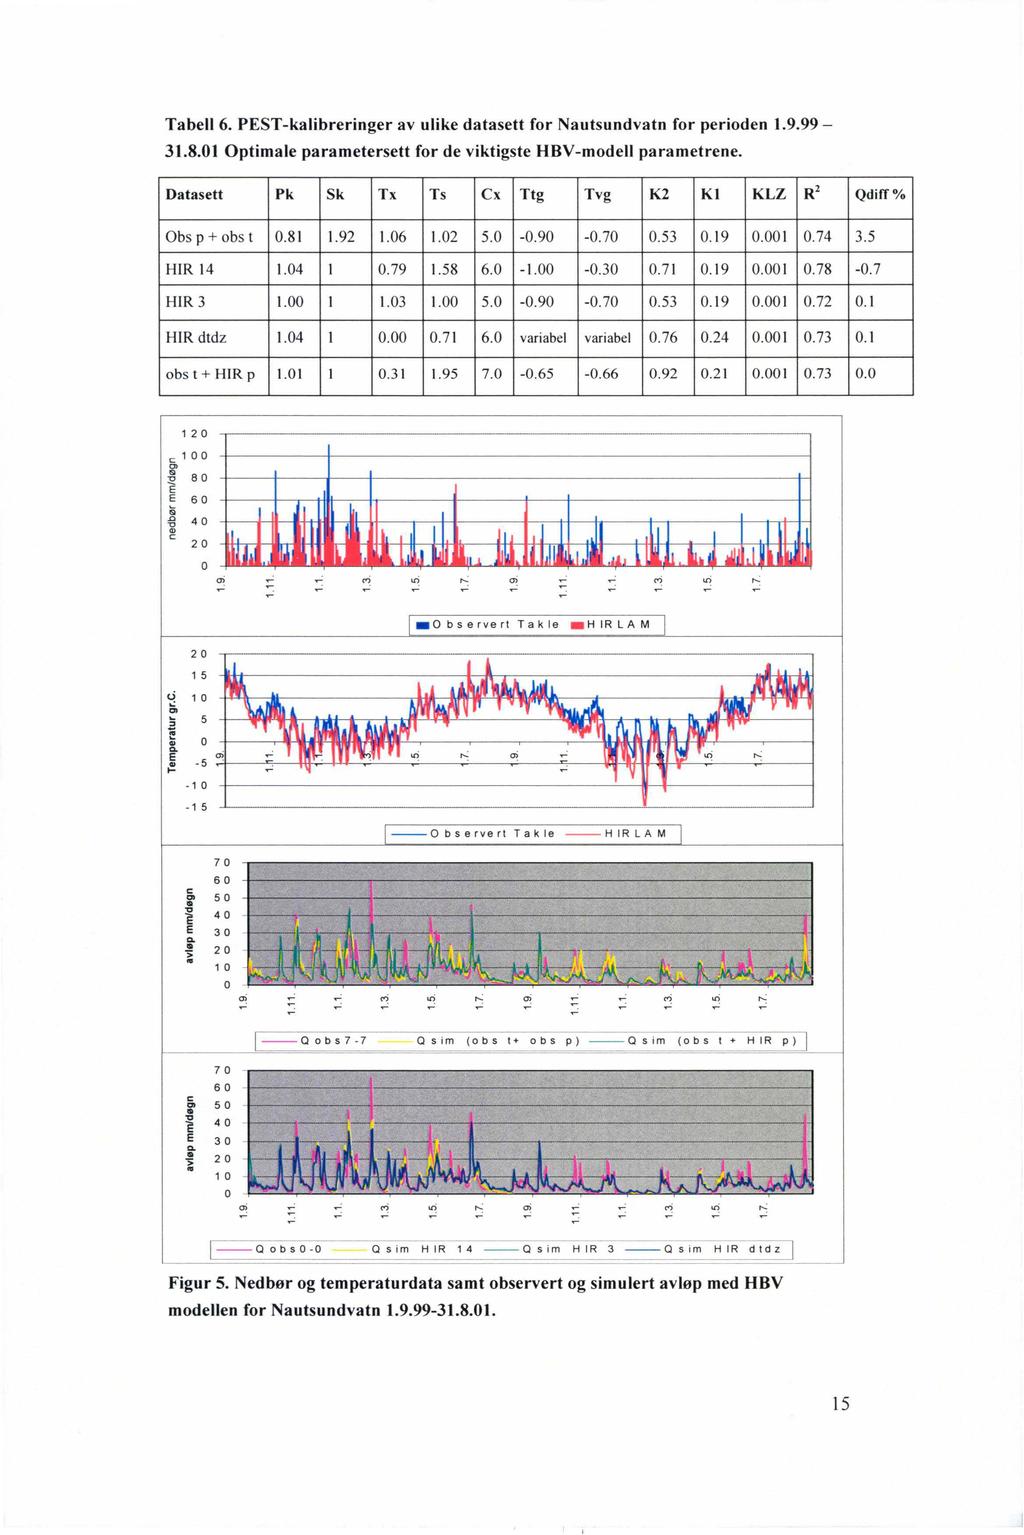 J Tabell 6. PST-kalibreringer av ulike datasett for Nautsundvatn for perioden 1.9.99-31.8.01 Optimale parametersett for de viktigste HBV-modell parametrene.